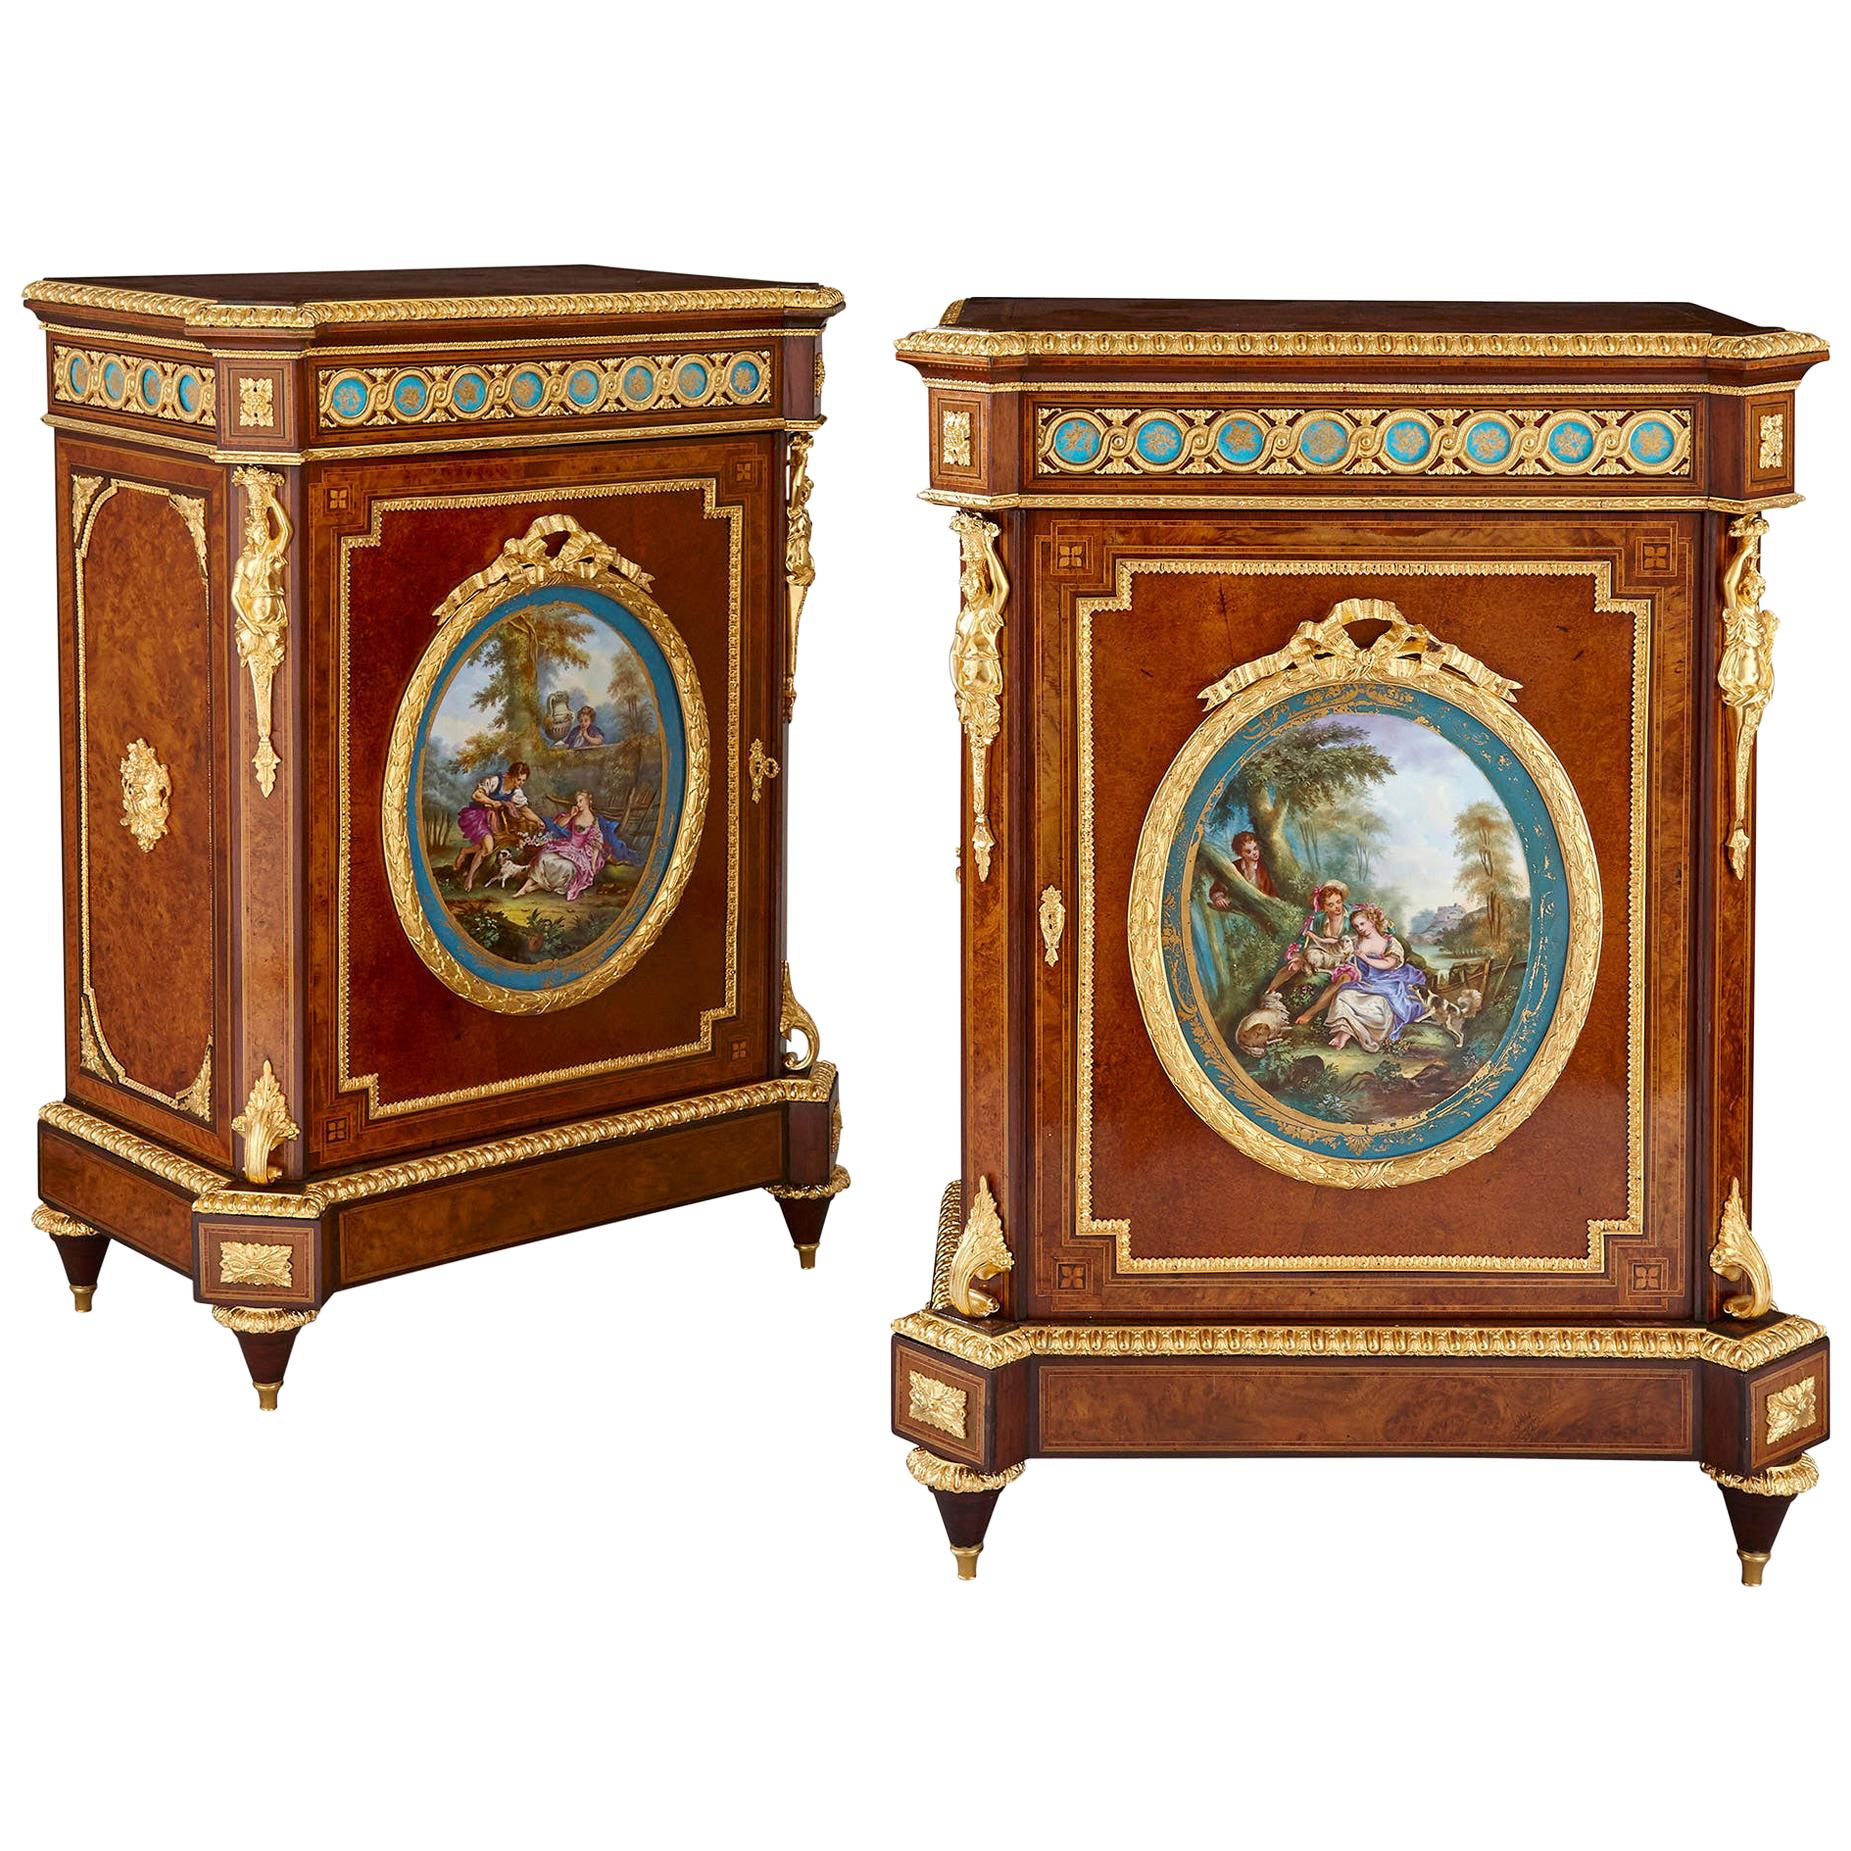 Paire d'armoires amboine d'époque victorienne avec plaques de porcelaine de style Sèvres